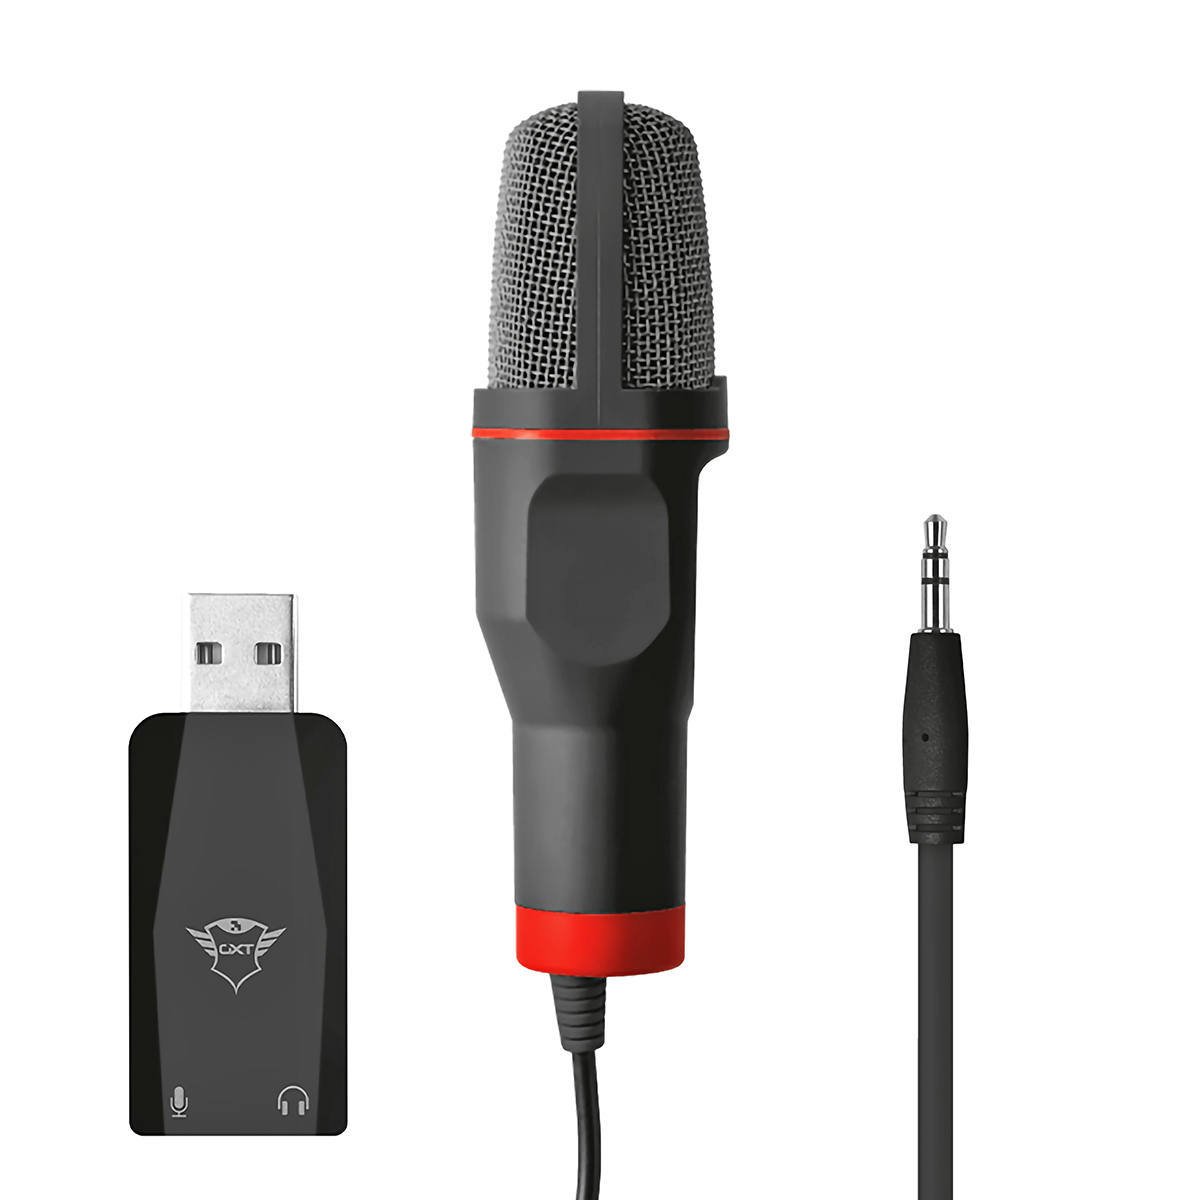 Microfone USB Gamer Som Digital com Adaptador USB Tripé de Mesa Ângulo Ajustável Trust GXT 212 Mico Red